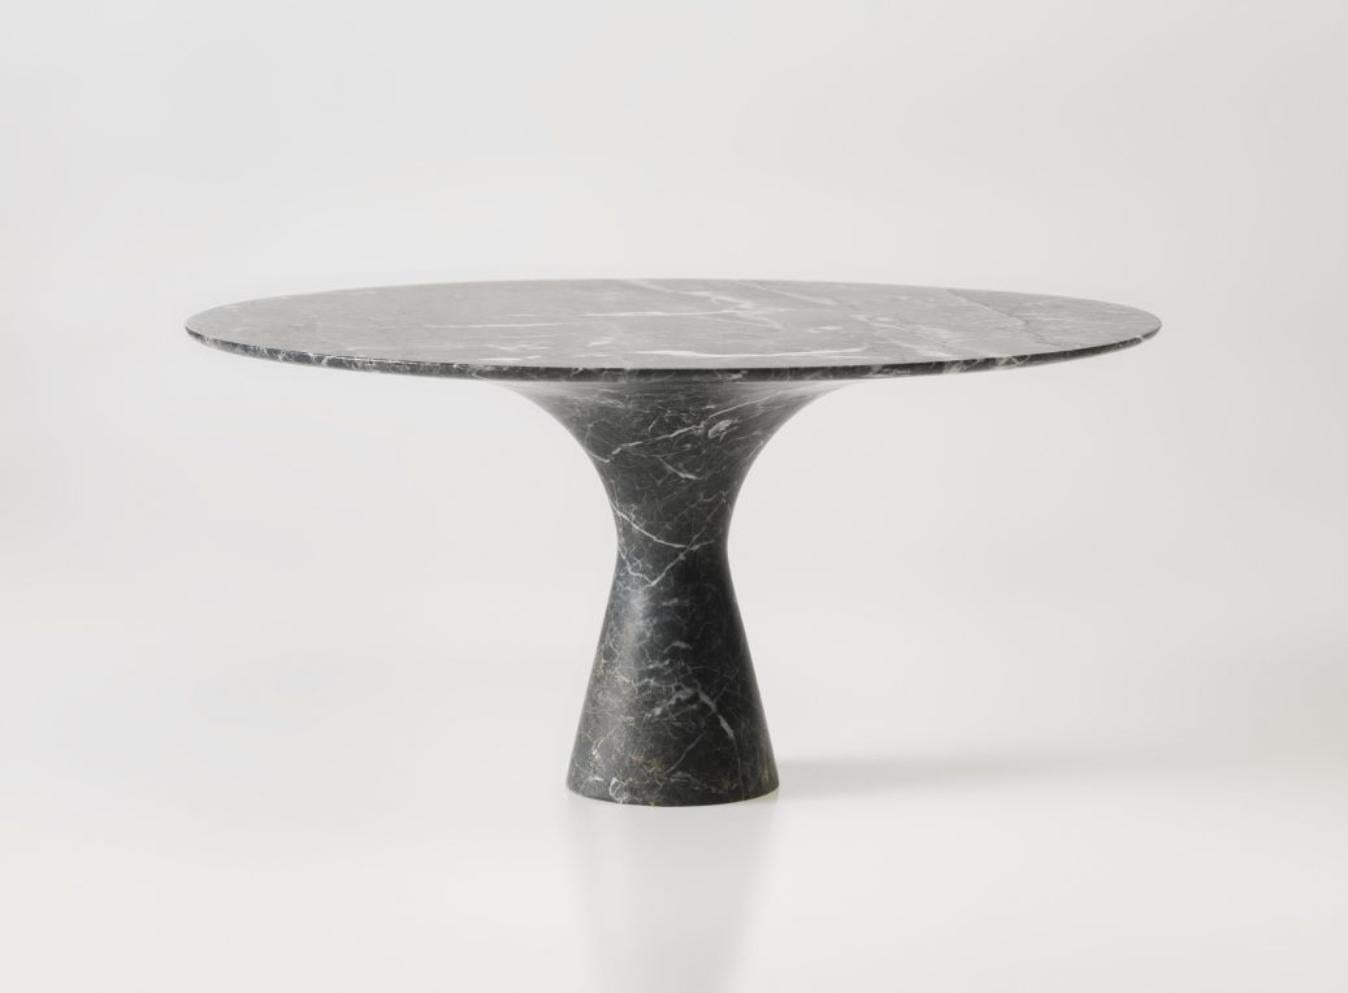 Table de salle à manger en marbre gris Saint Laurent raffinée et contemporaine 160/75
Dimensions : 160 x 75 cm
Matériaux : Gris Saint Laurent

Angelo est l'essence même d'une table ronde en pierre naturelle, une forme sculpturale dans un